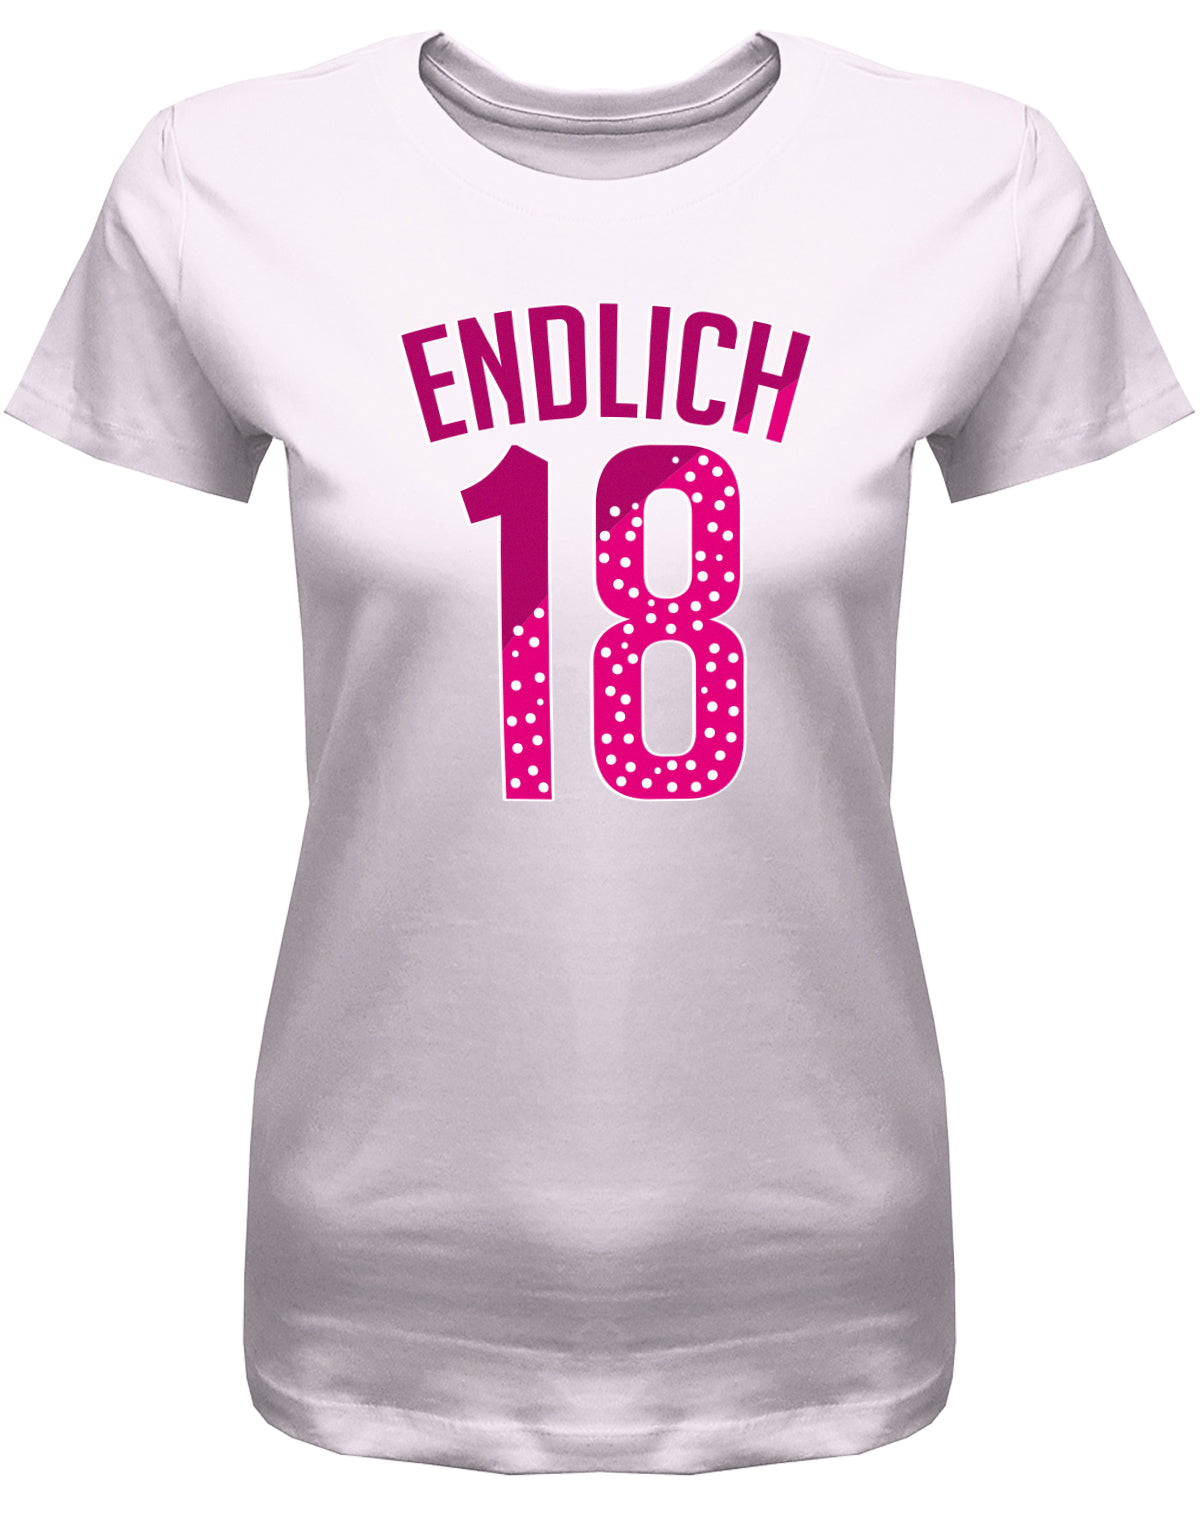 Lustiges T-Shirt zum 18. Geburtstag Mädchen. Bedruckt mit: Endlich 18 im Collage Style Pink und Punkten. Das T Shirt 18 Geburtstag Mädchen Lustig ist ein tolles Geschenk für alle 18 Jährigen. Geschenk zum 18 geburtstag Frau ✓ 2005 geburtstag Frau ✓ 18 Geburtstag tshirt ✓ shirt geburtstag 18 Rosa